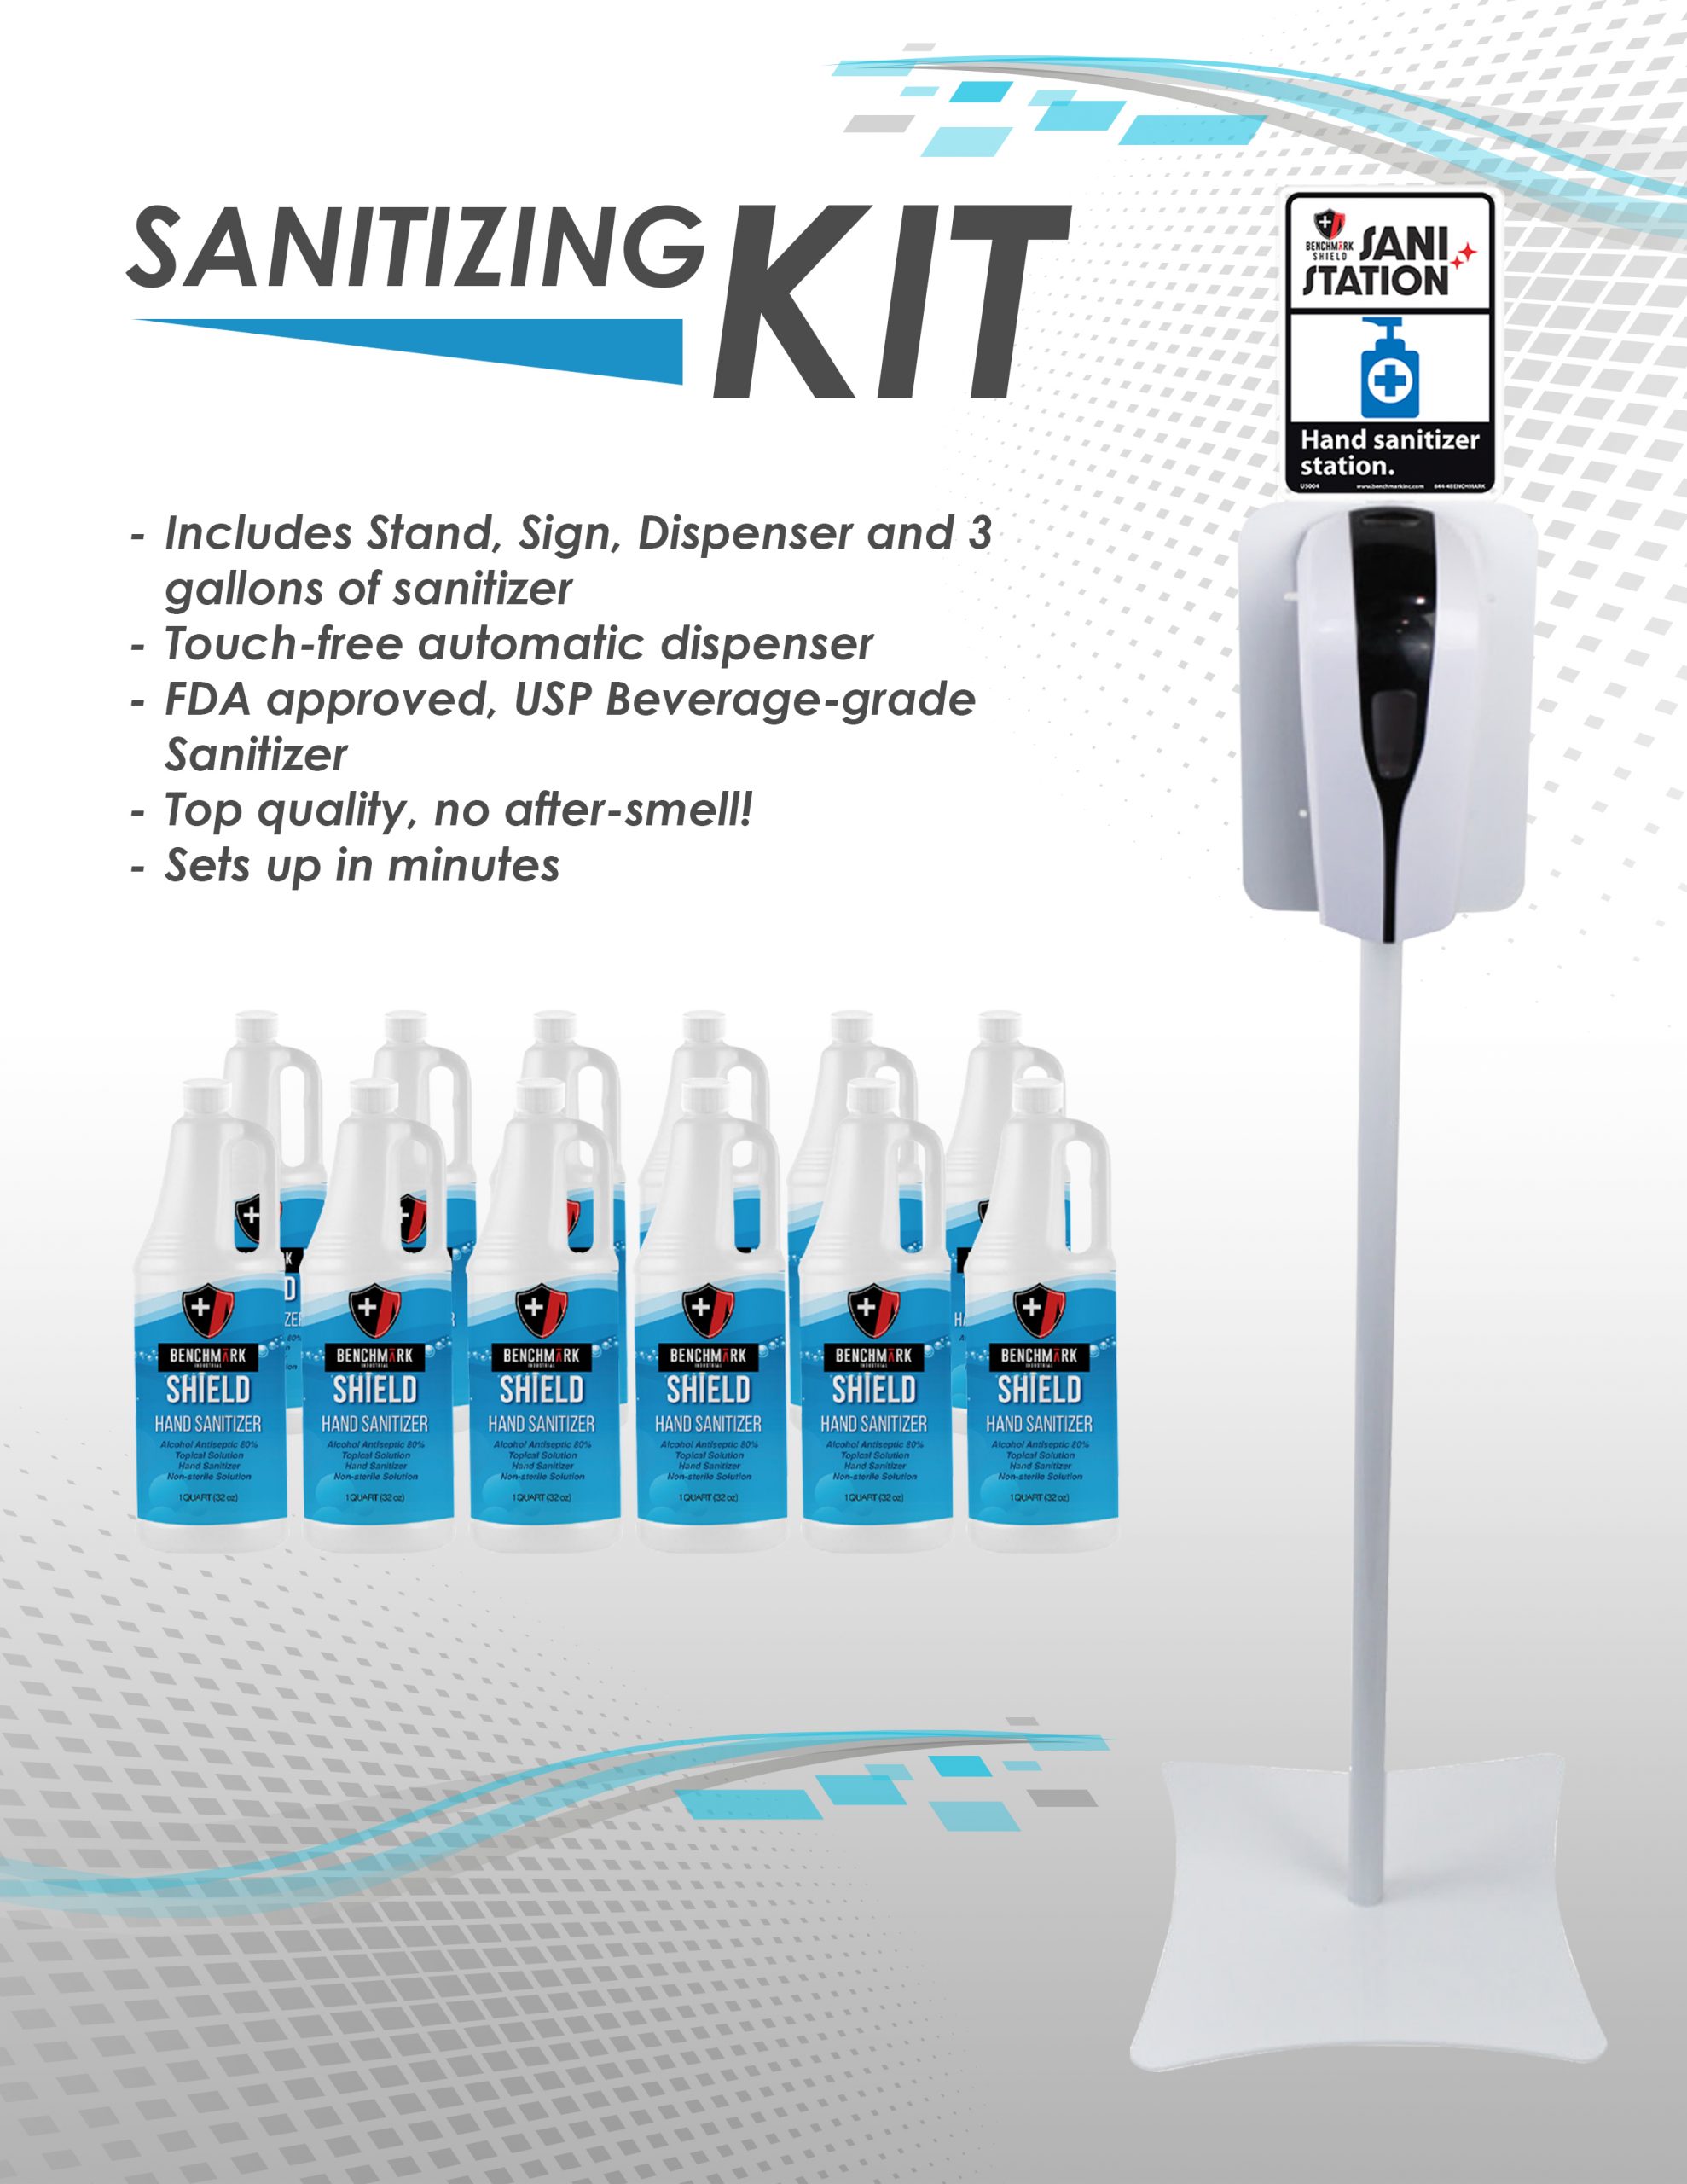 Sanitixing Kit